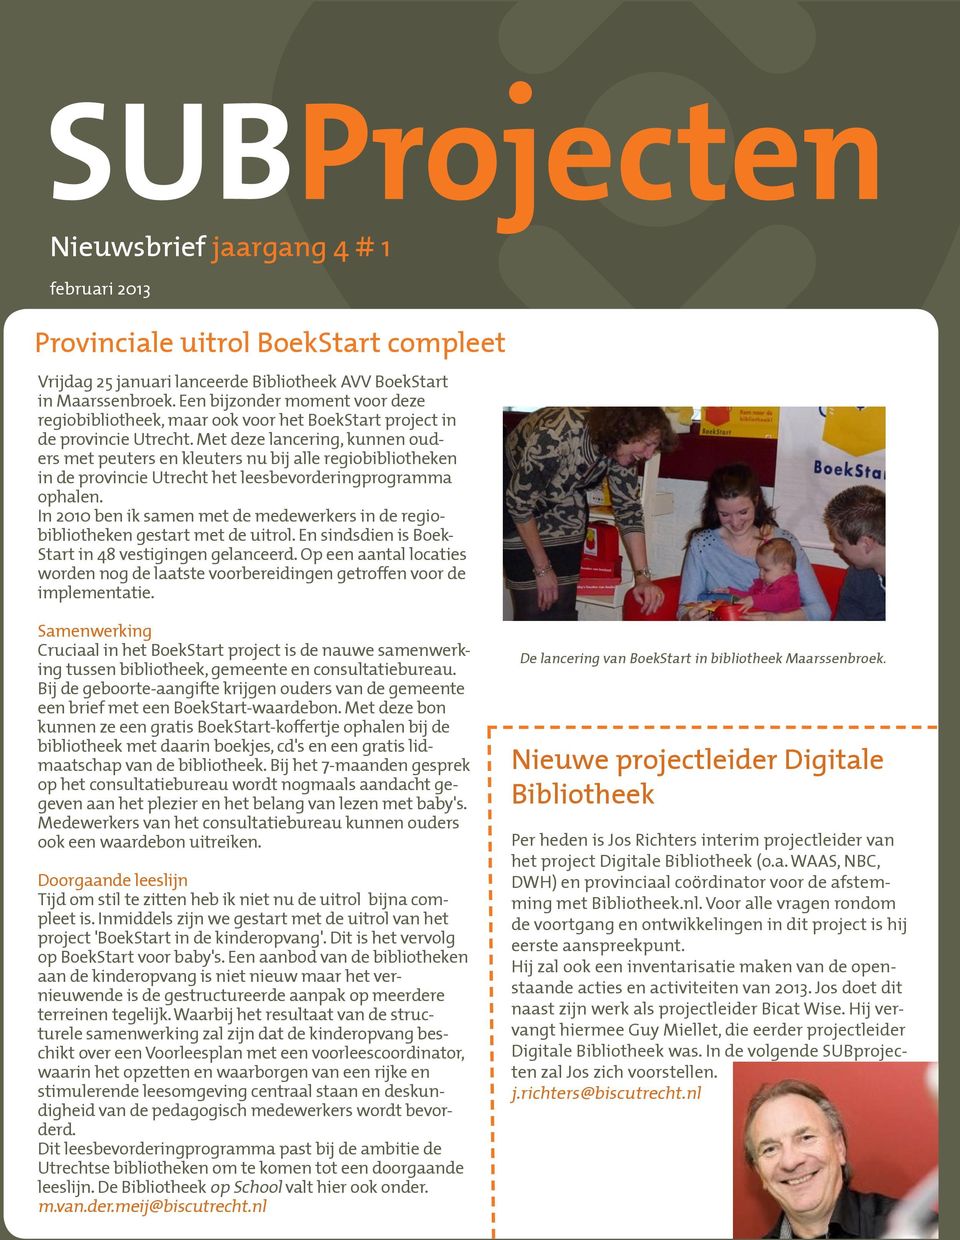 Met deze lancering, kunnen ouders met peuters en kleuters nu bij alle regiobibliotheken in de provincie Utrecht het leesbevorderingprogramma ophalen.